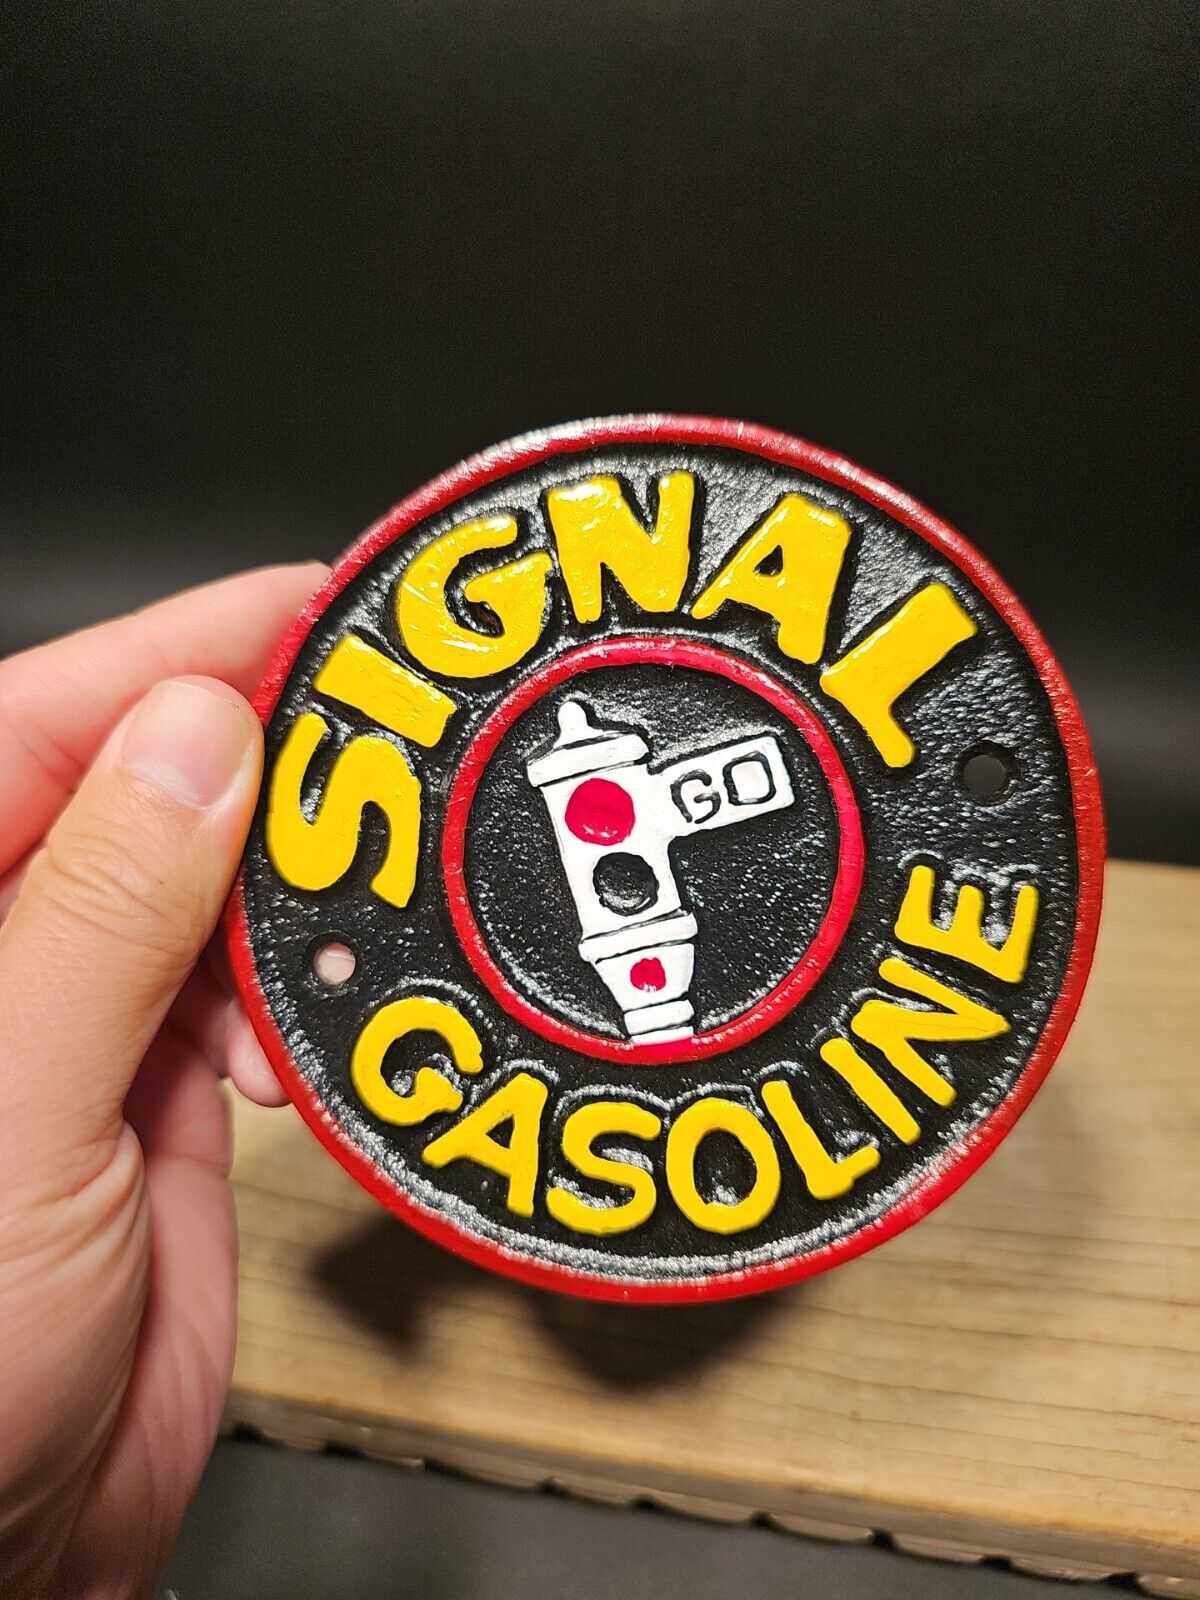 Antique Vintage Style Cast Iron Signal Gasoline Gas Oil Sign Plaque